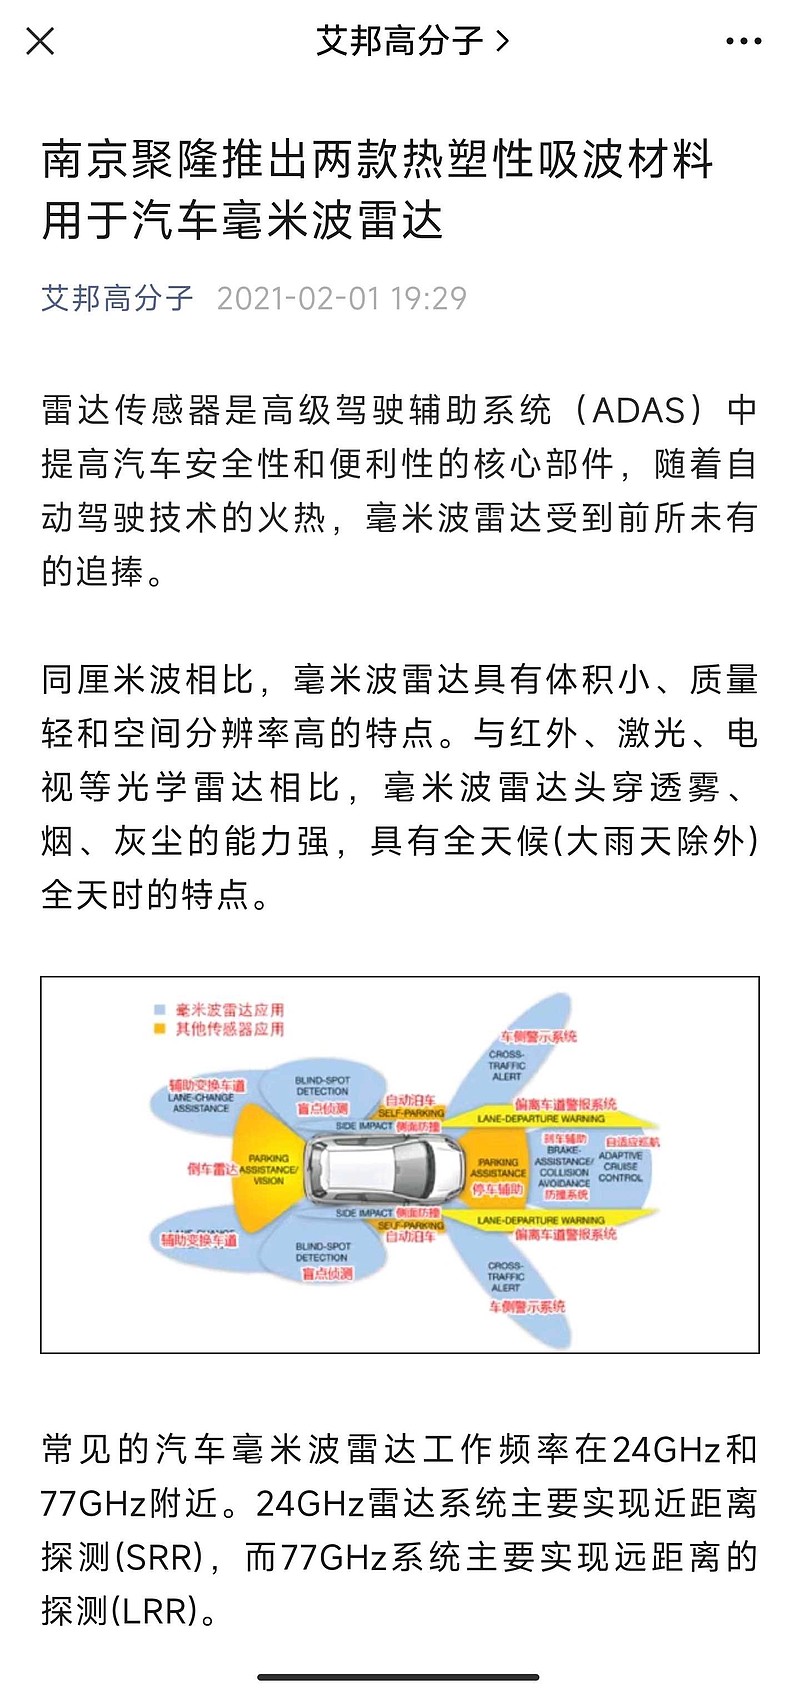 南京聚隆 ，毫米波雷达吸波罩产